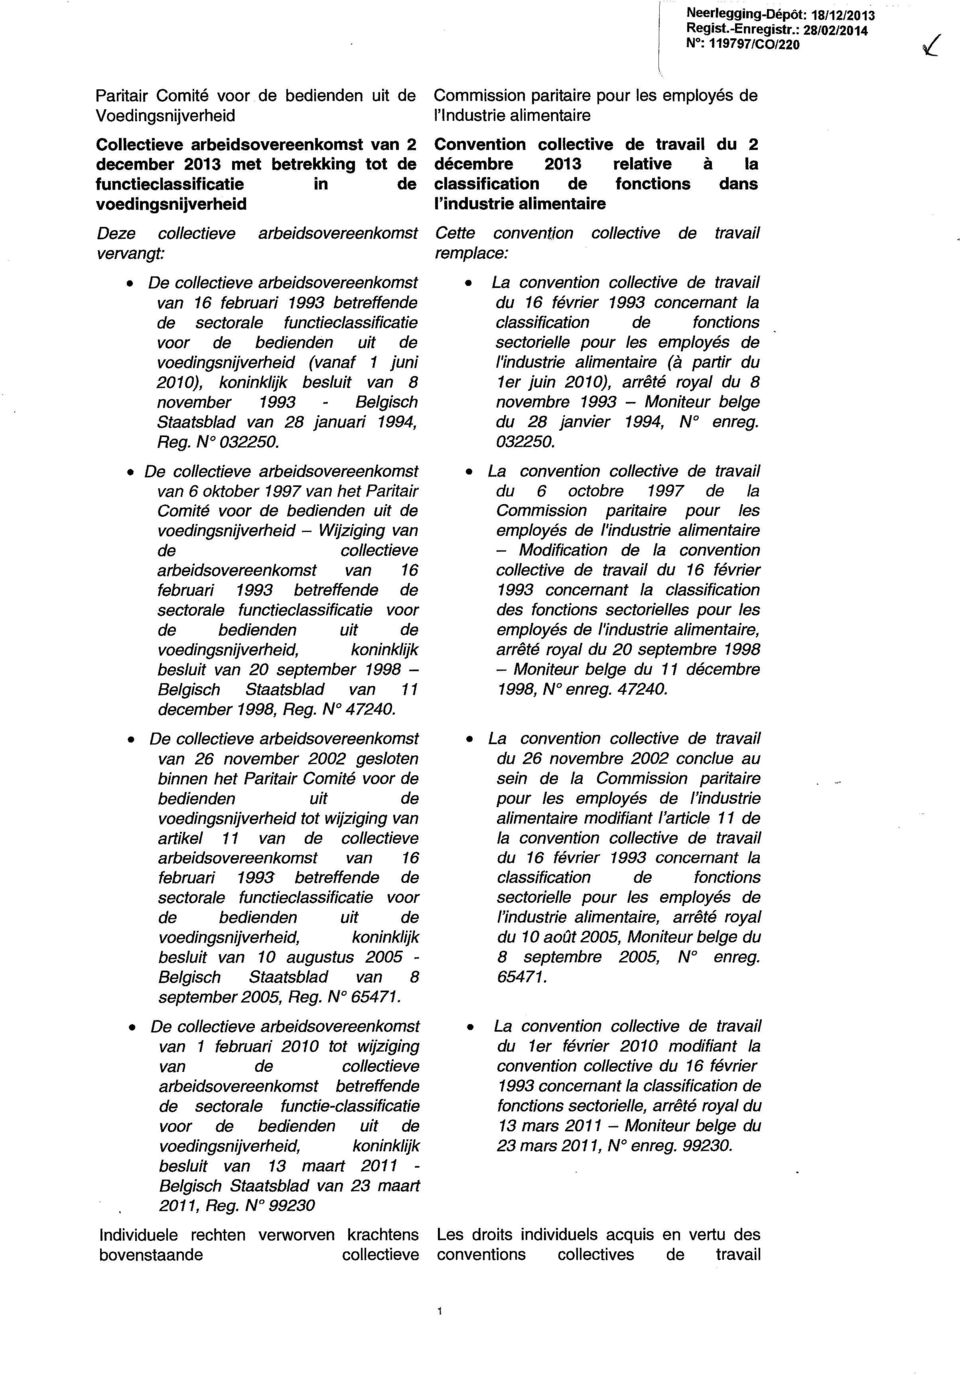 voedingsnijverheid Deze collectieve arbeidsovereenkomst vervangt: De collectieve arbeidsovereenkomst van 16 februari 1993 betreffende de sectorale functieclassificatie voor de bedienden uit de